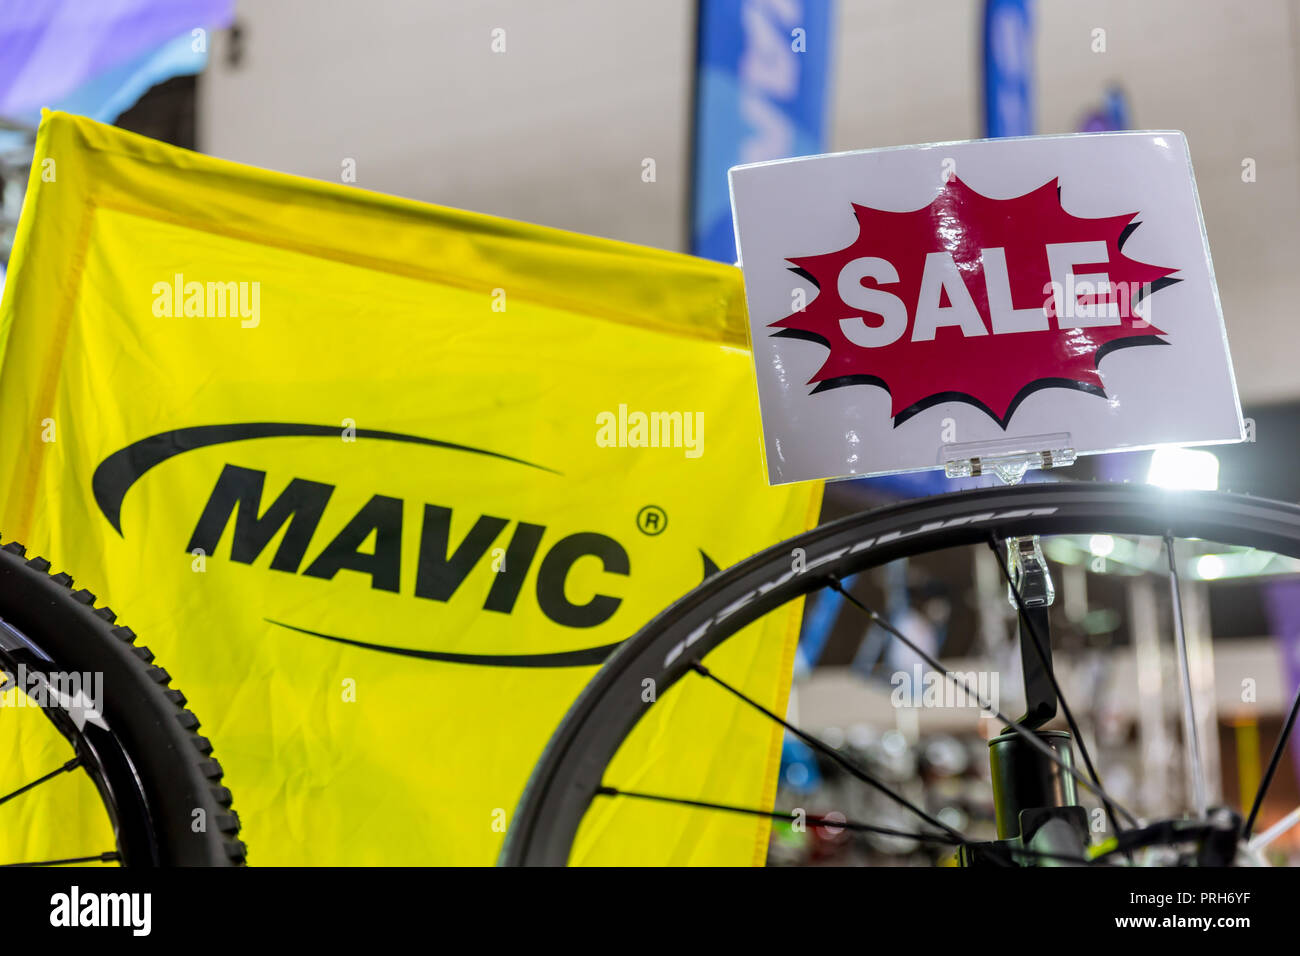 Mavic Francese di parti di biciclette fabbricante booth con il cerchio di bicicletta Promozione vendita in International Bangkok Bike 2018. Più grande o di bicicletta Bike Expo fiera in Ba Foto Stock